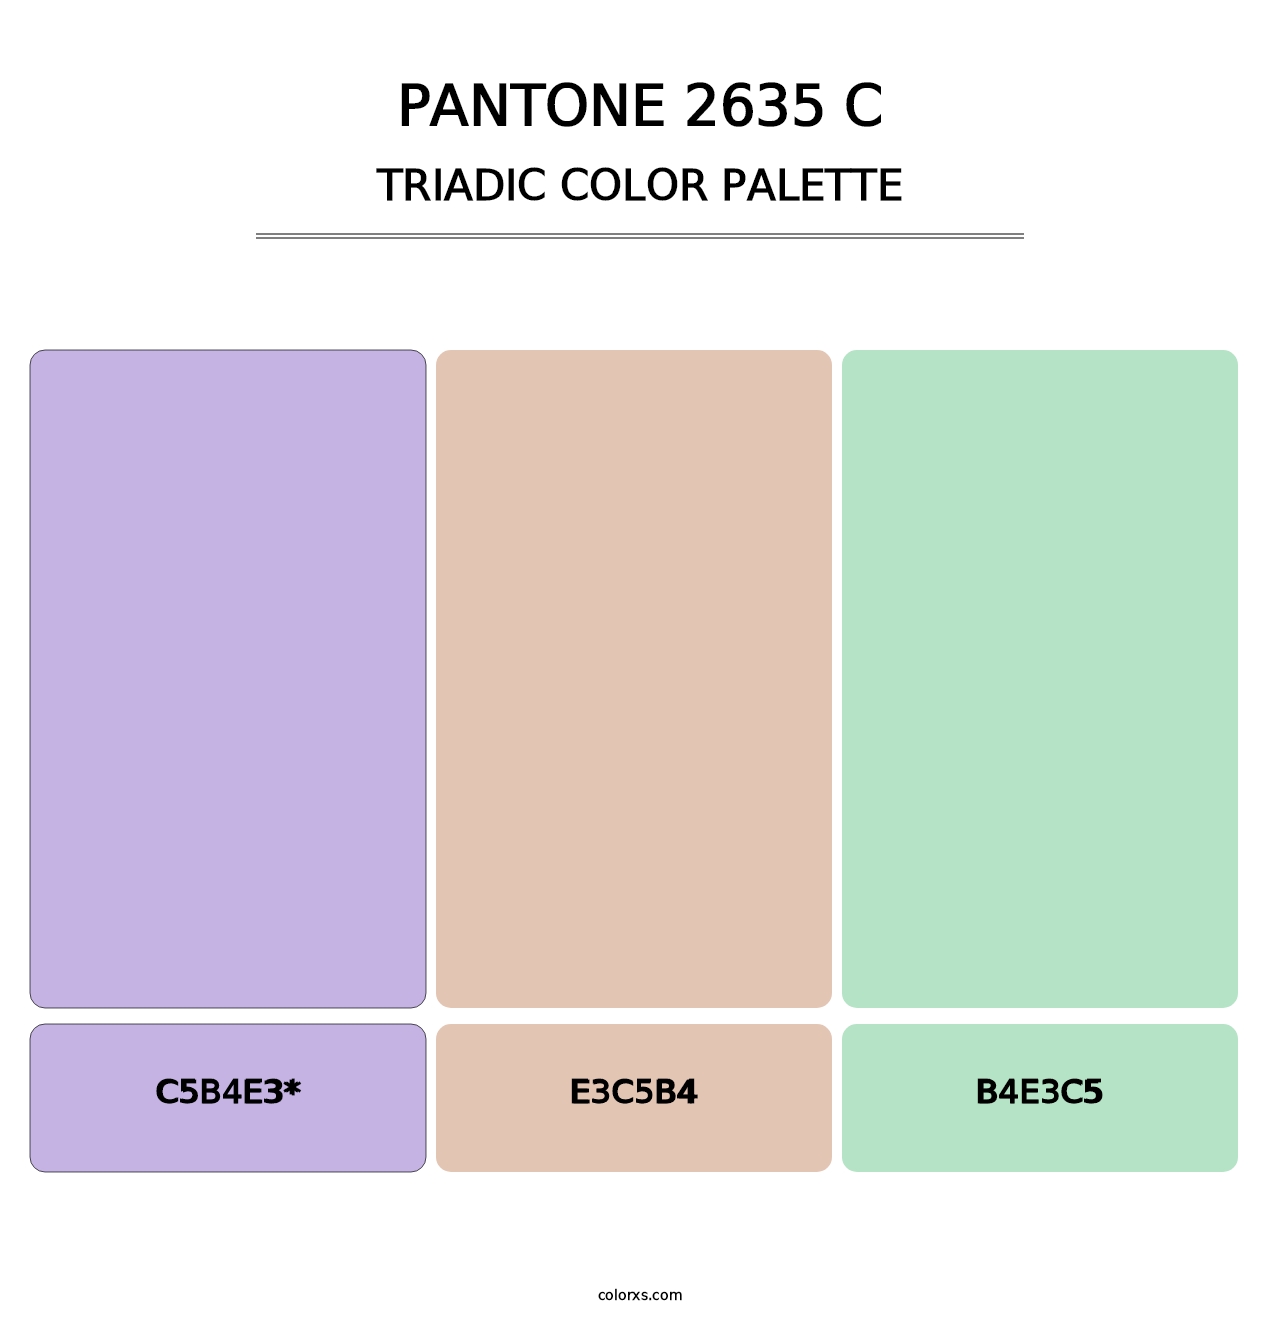 PANTONE 2635 C - Triadic Color Palette